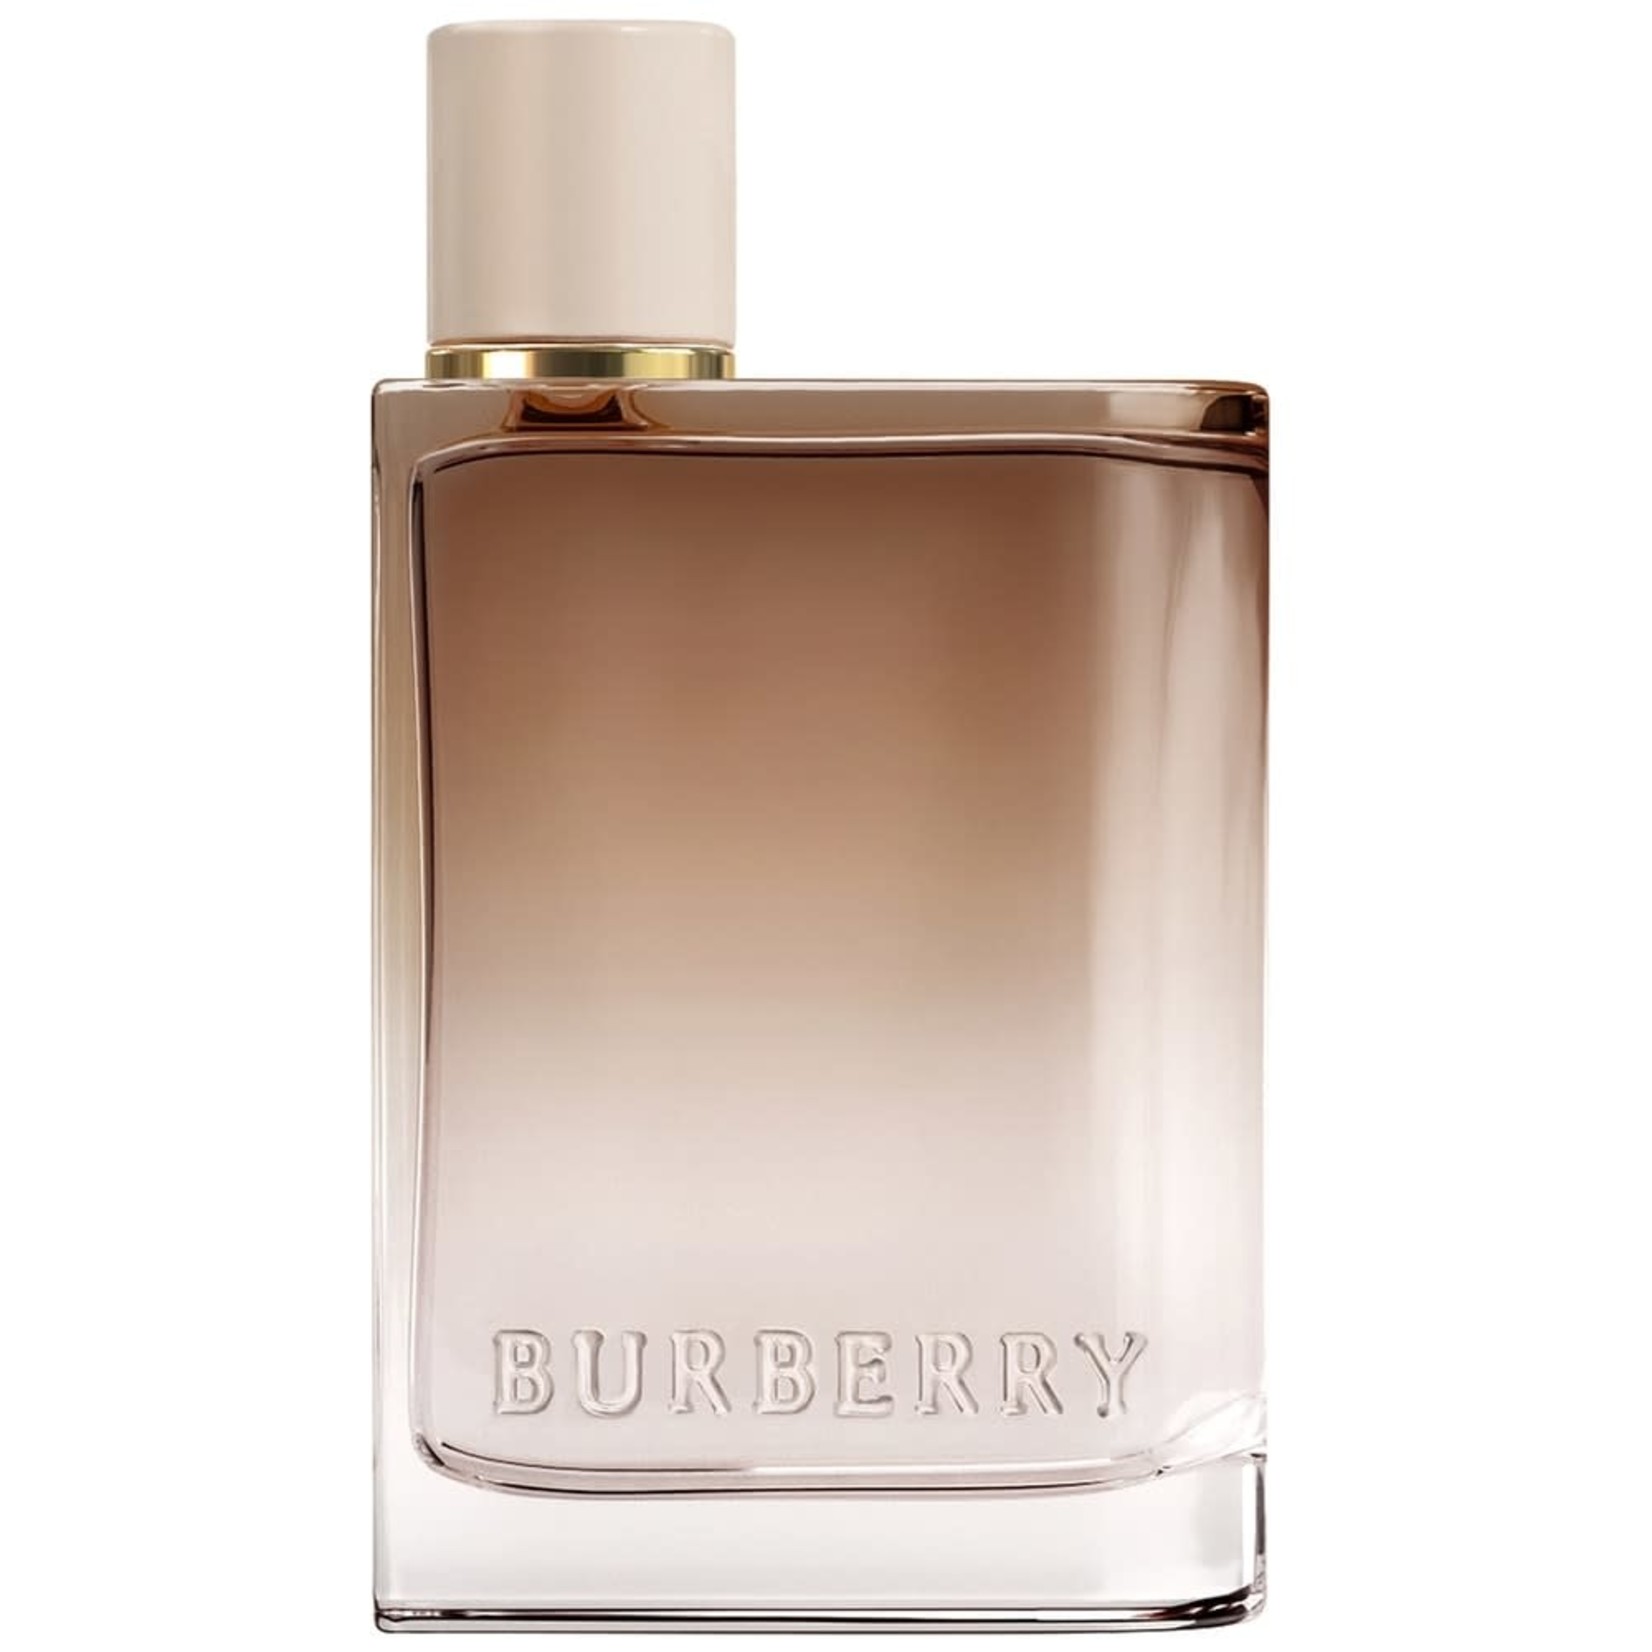 BURBERRY BURBERRY -  HER INTENSE Eau De Parfum